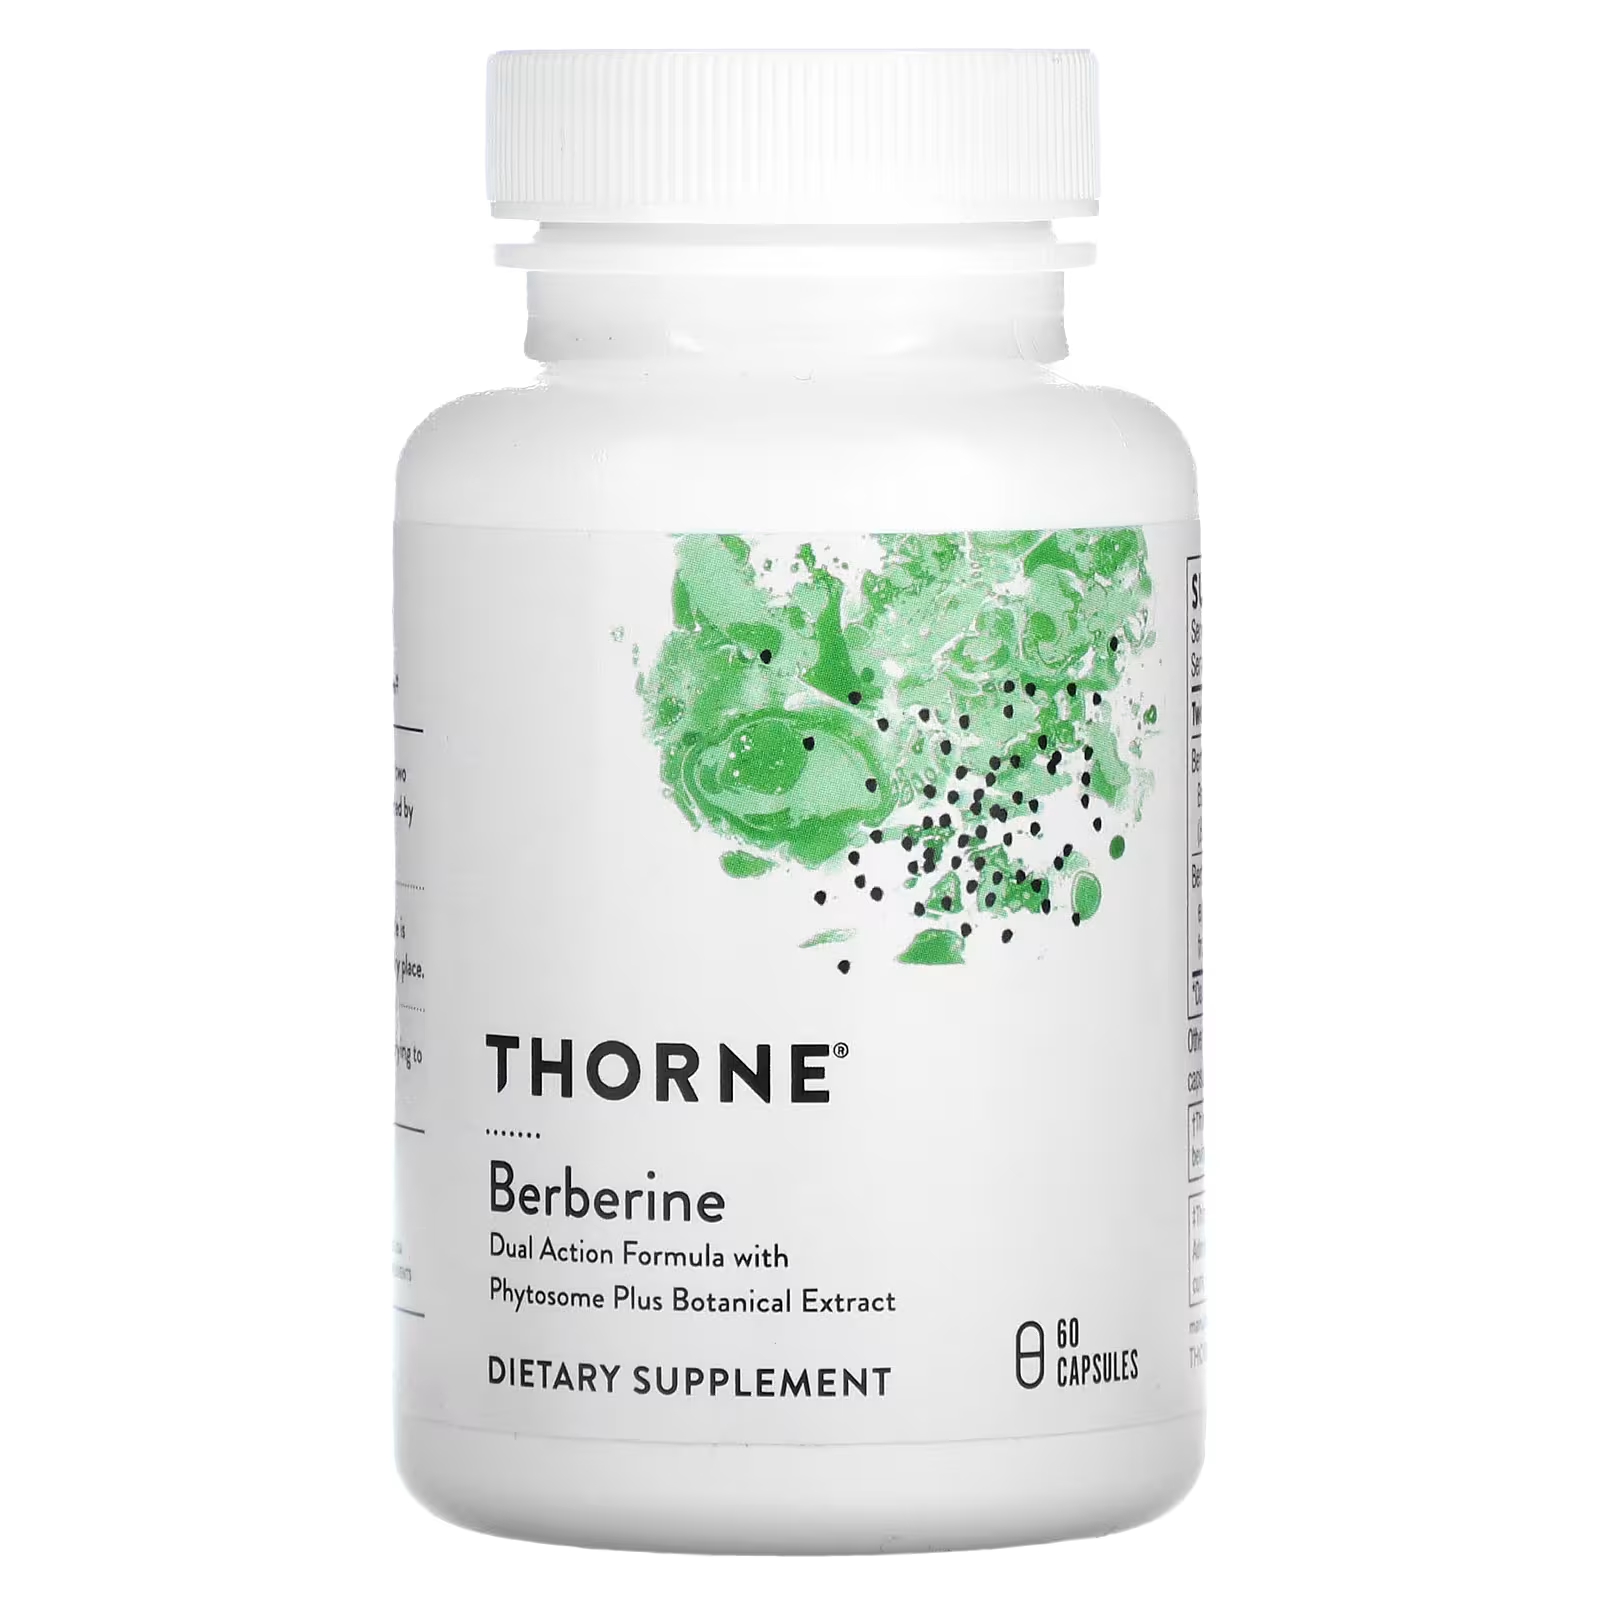 Торн берберин 1000 мг 60 капсул (500 мг в 1 капсуле) Thorne thorne берберин 200 мг 60 капсул